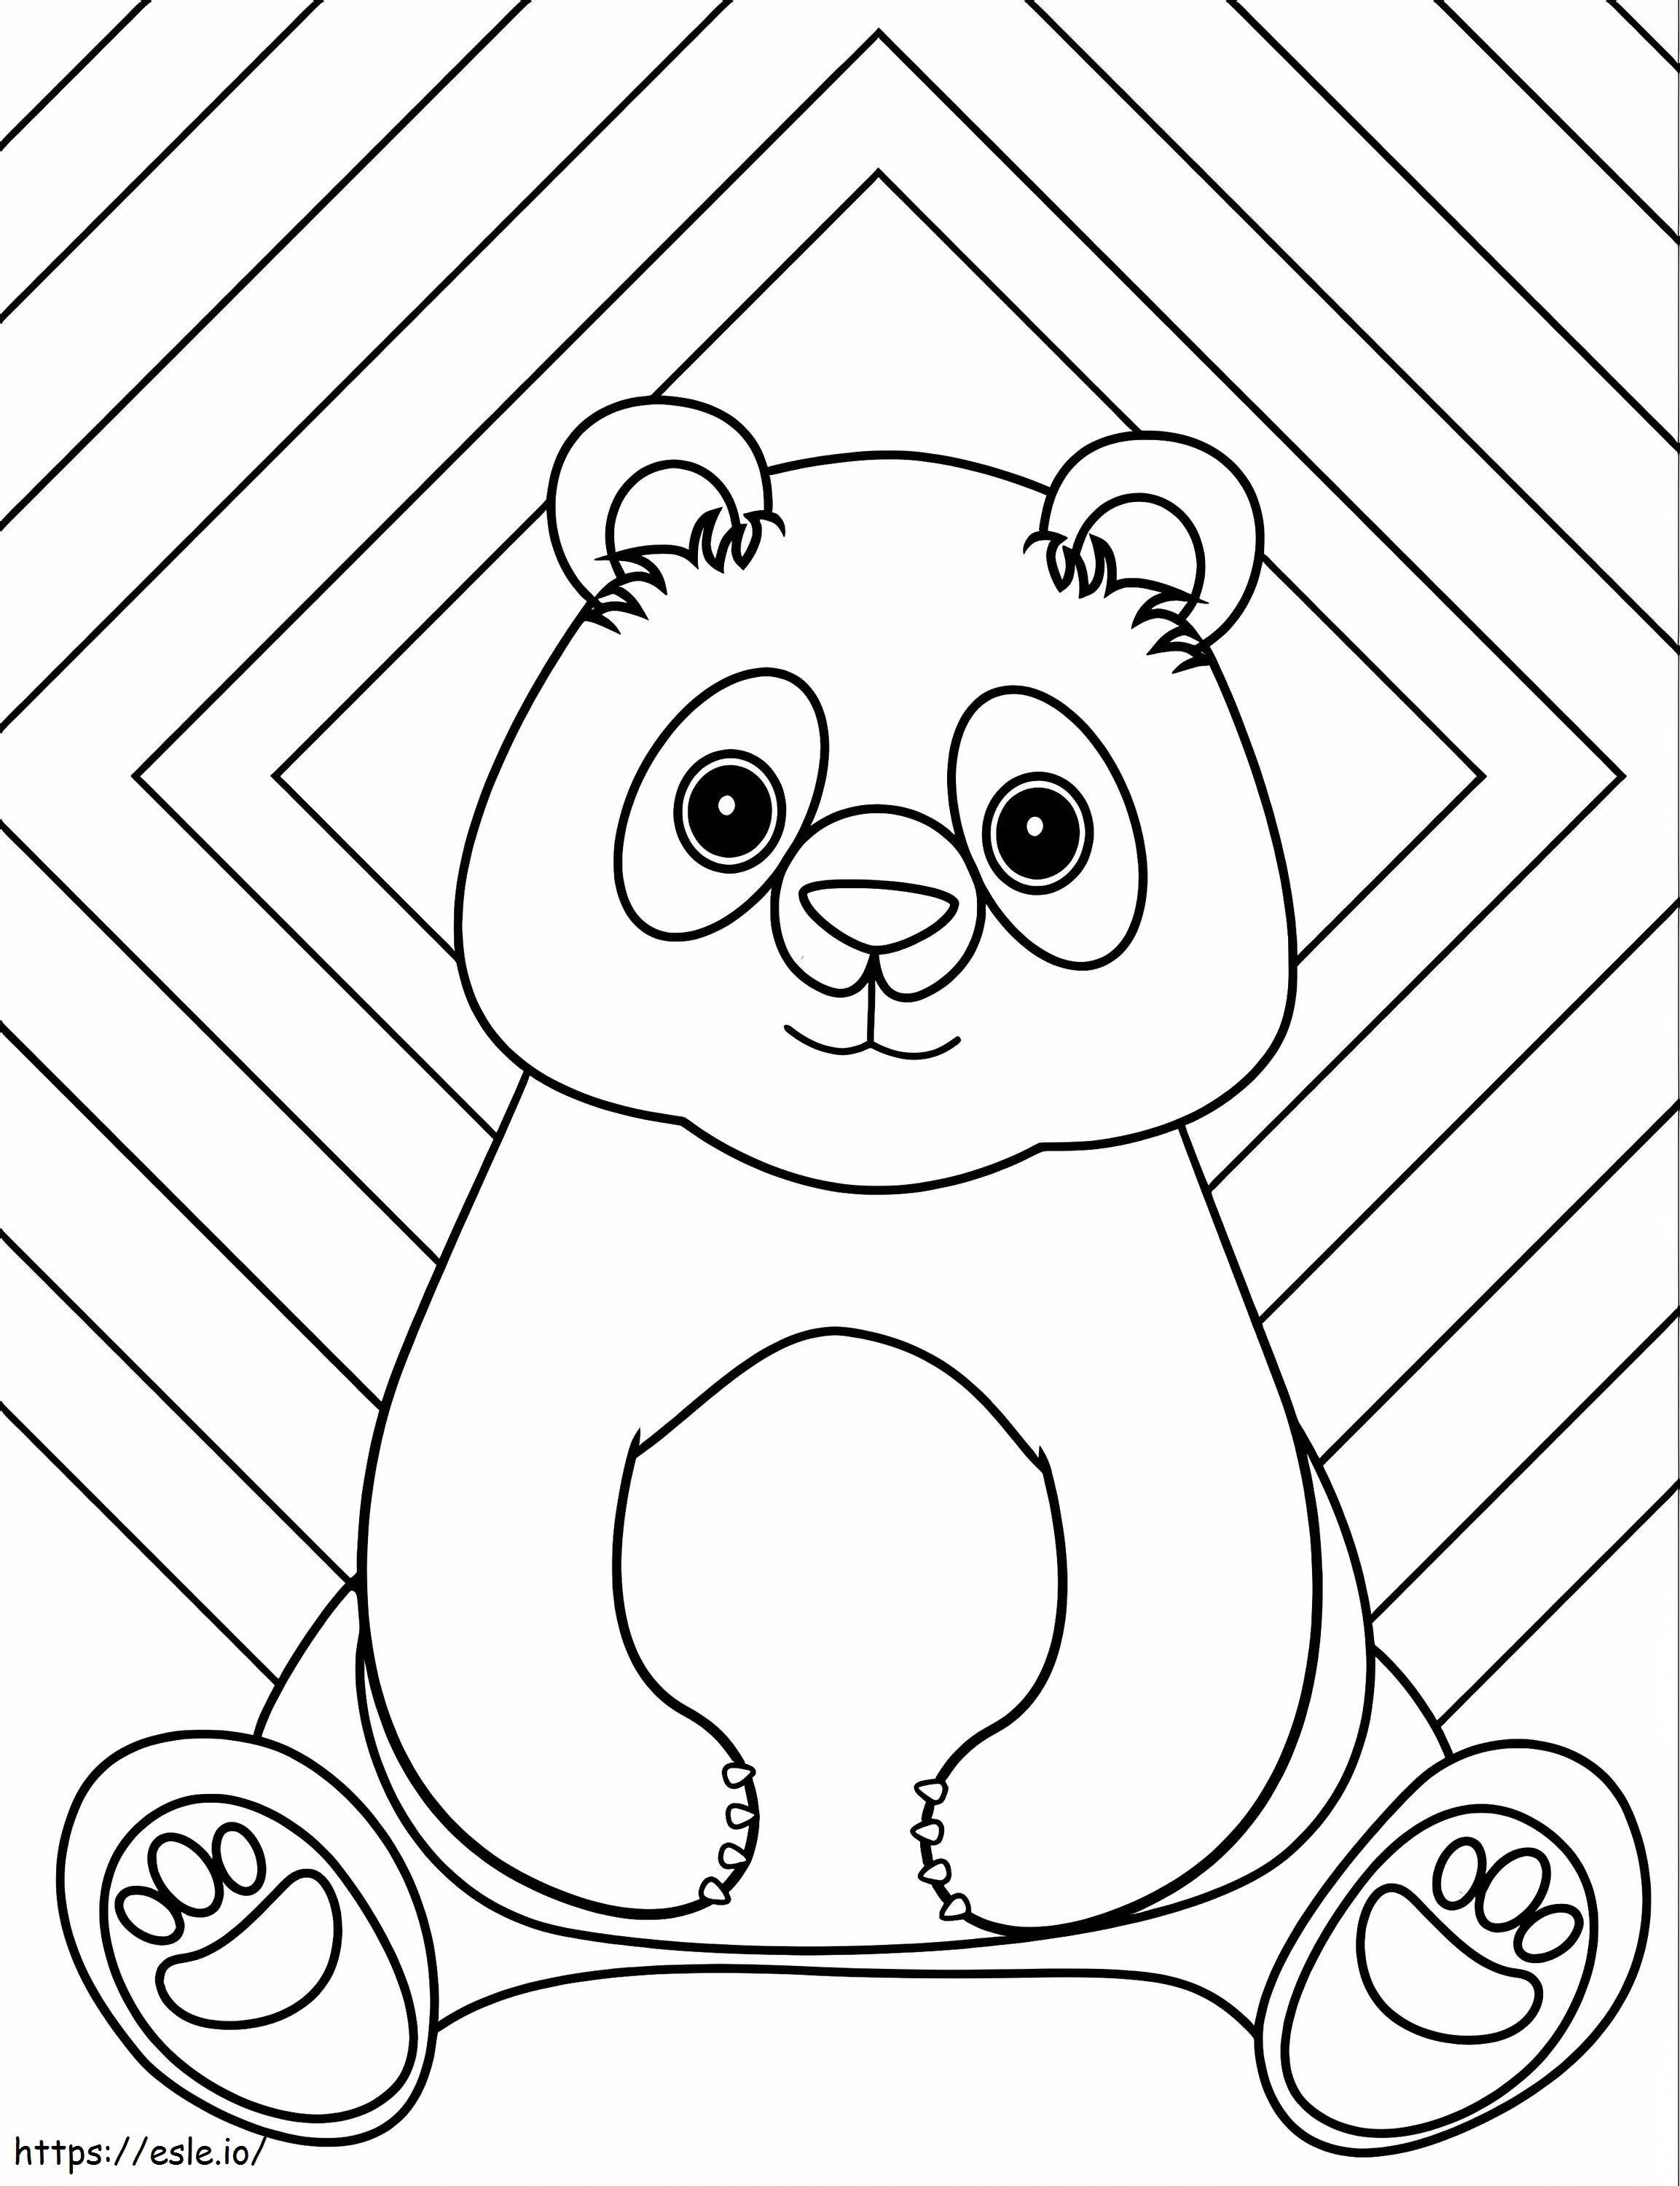 Coloriage Un panda assis à imprimer dessin